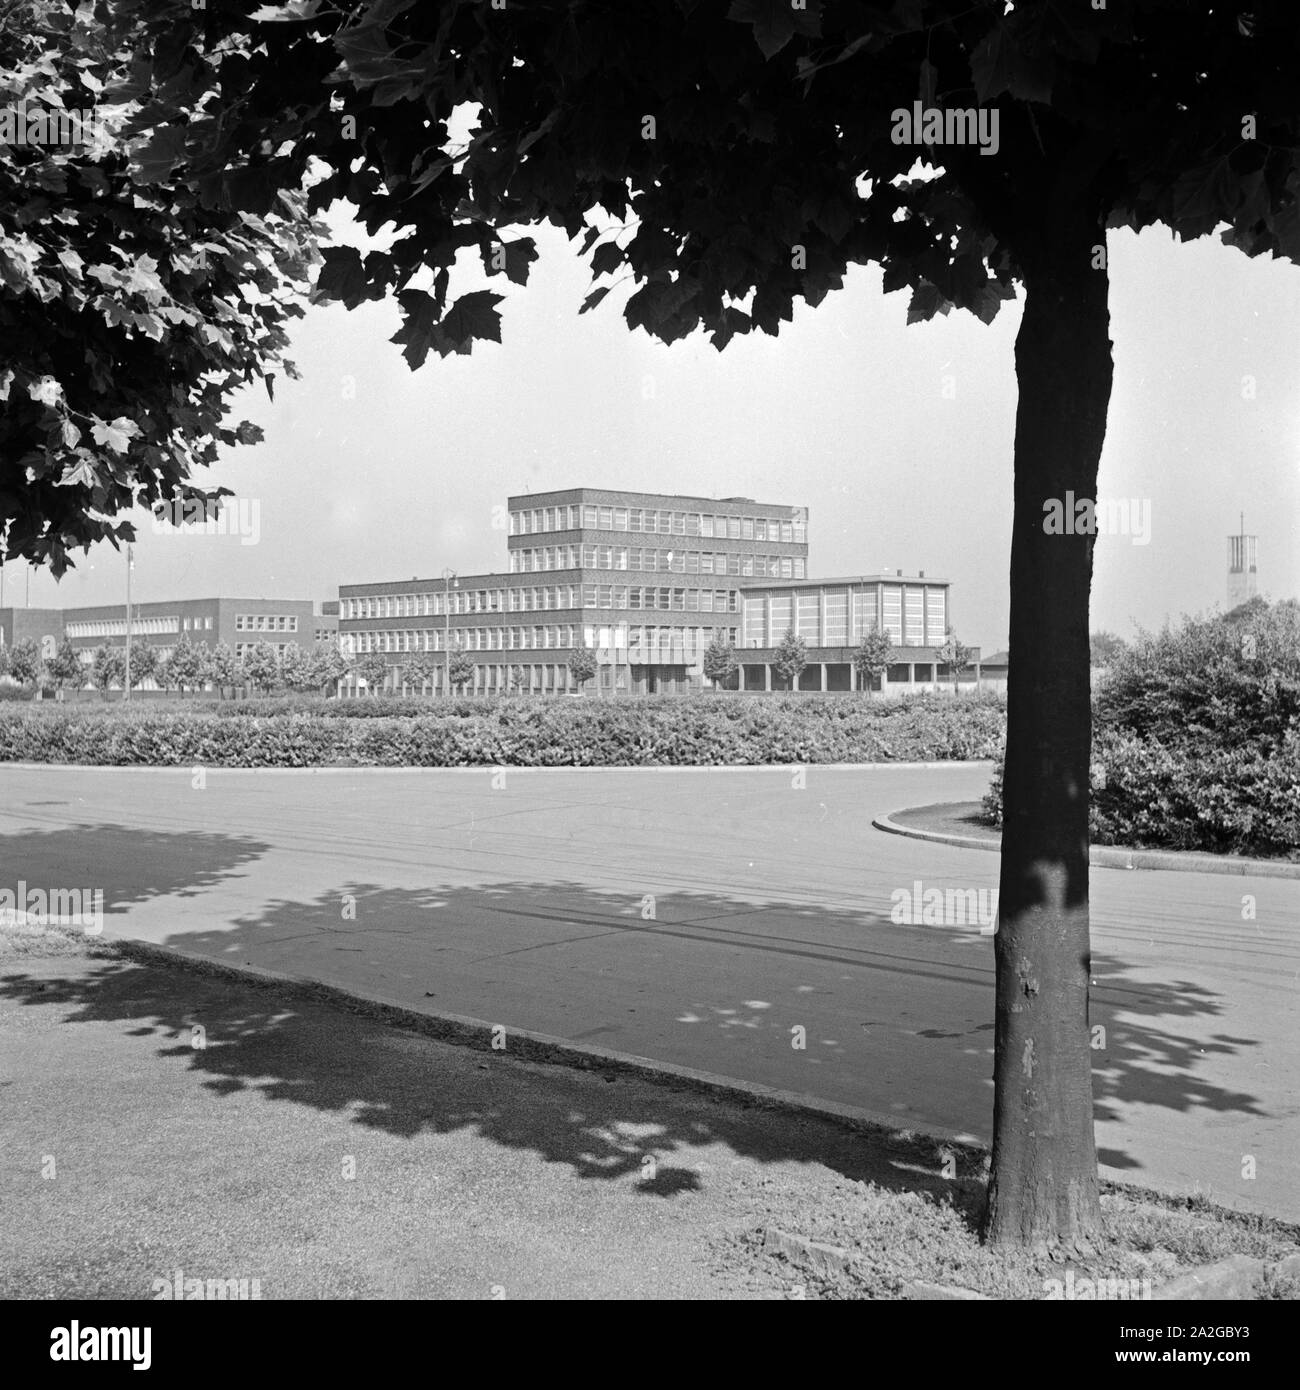 Die pädagogische Akademie oder Hochschule für Lehrerbildung in Dortmund, Deutschland 1930er Jahre. Pedagogical academy at Dortmund, Germany 1930s. Stock Photo